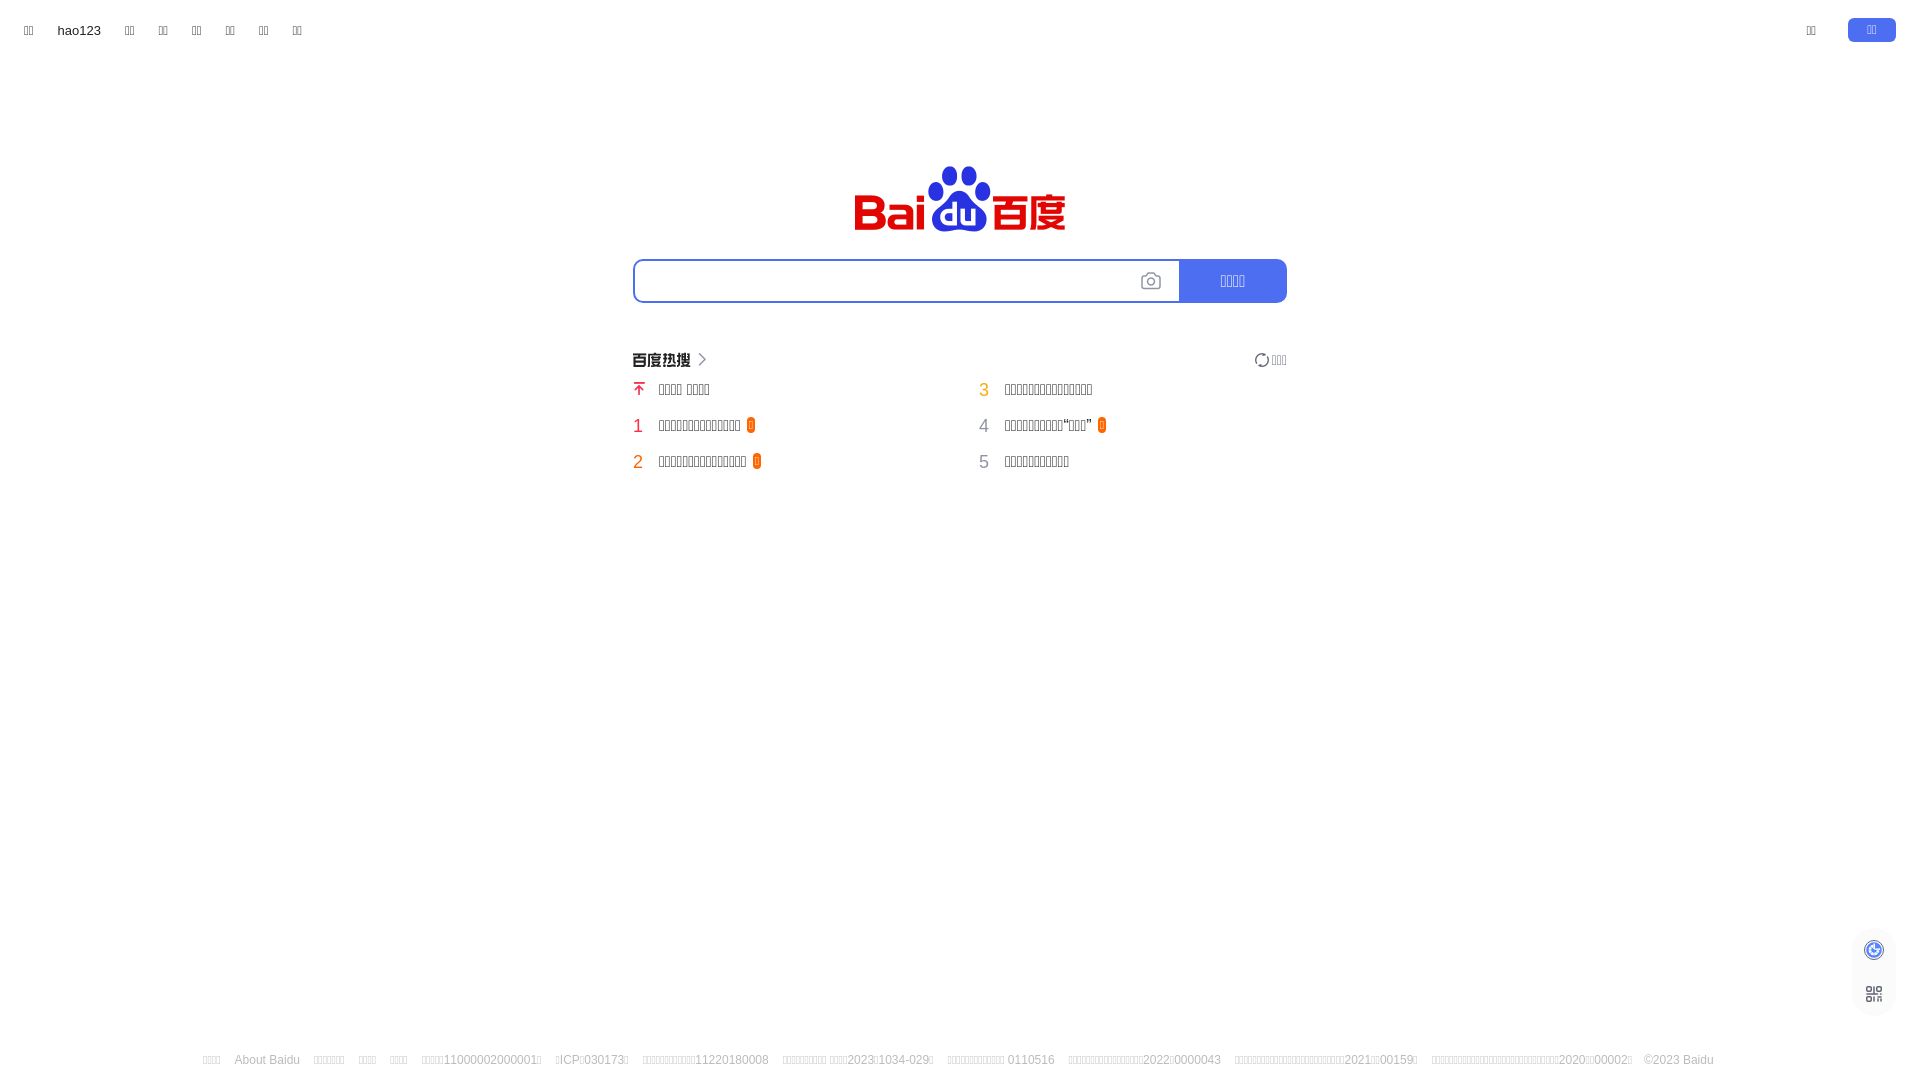 Status do site baidu.com está   ONLINE